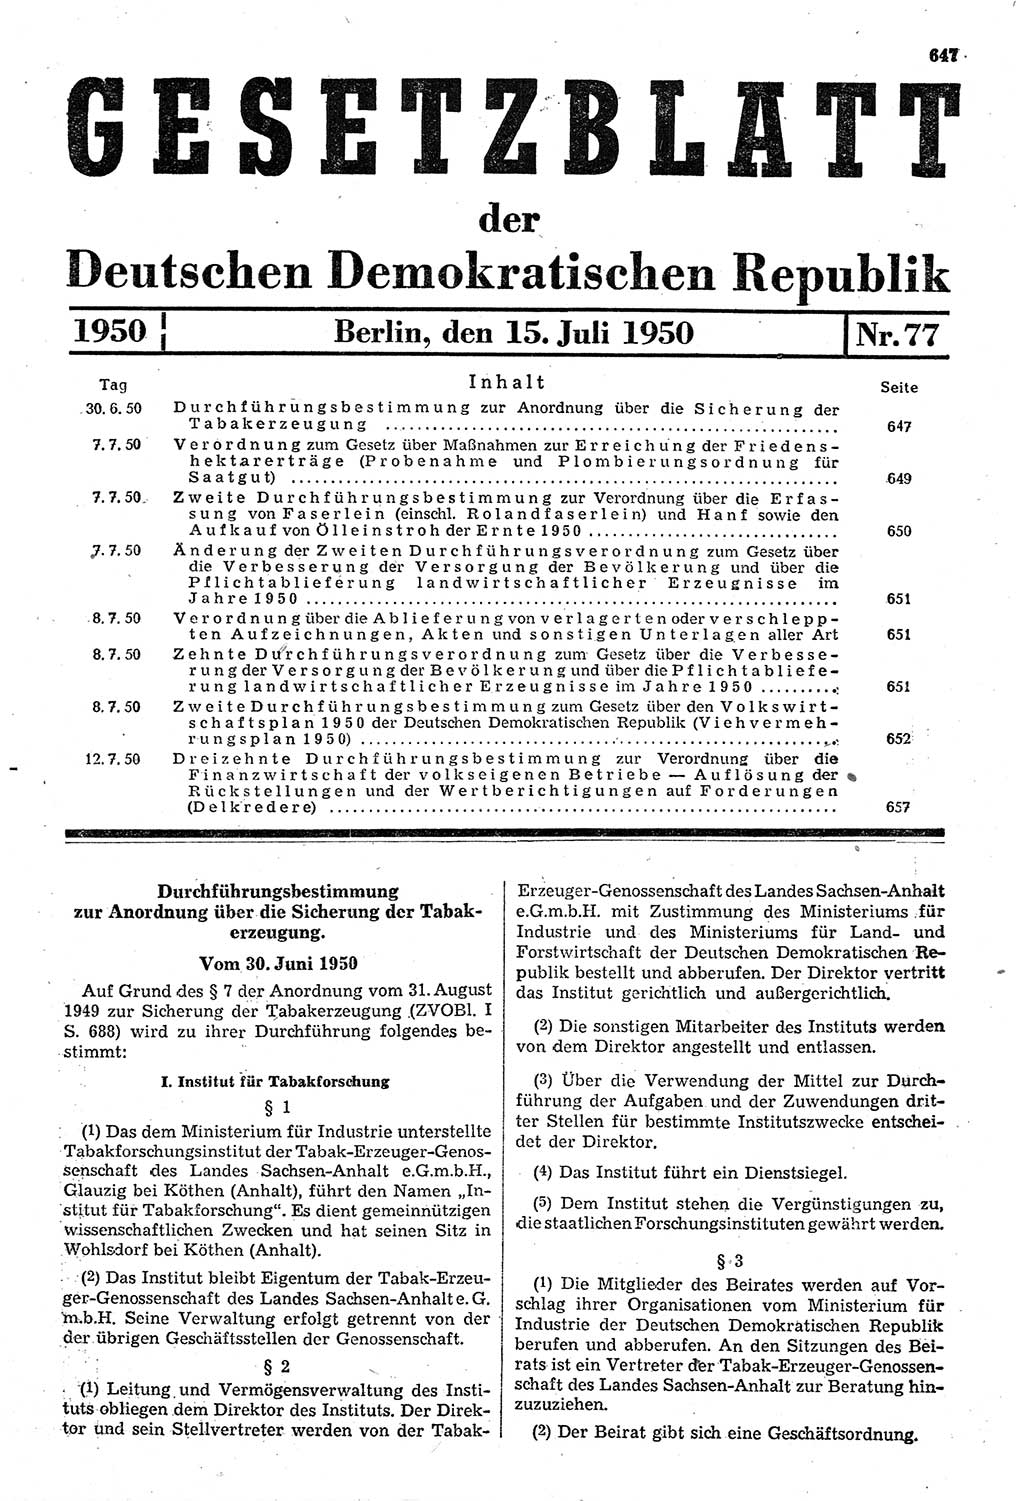 Gesetzblatt (GBl.) der Deutschen Demokratischen Republik (DDR) 1950, Seite 647 (GBl. DDR 1950, S. 647)